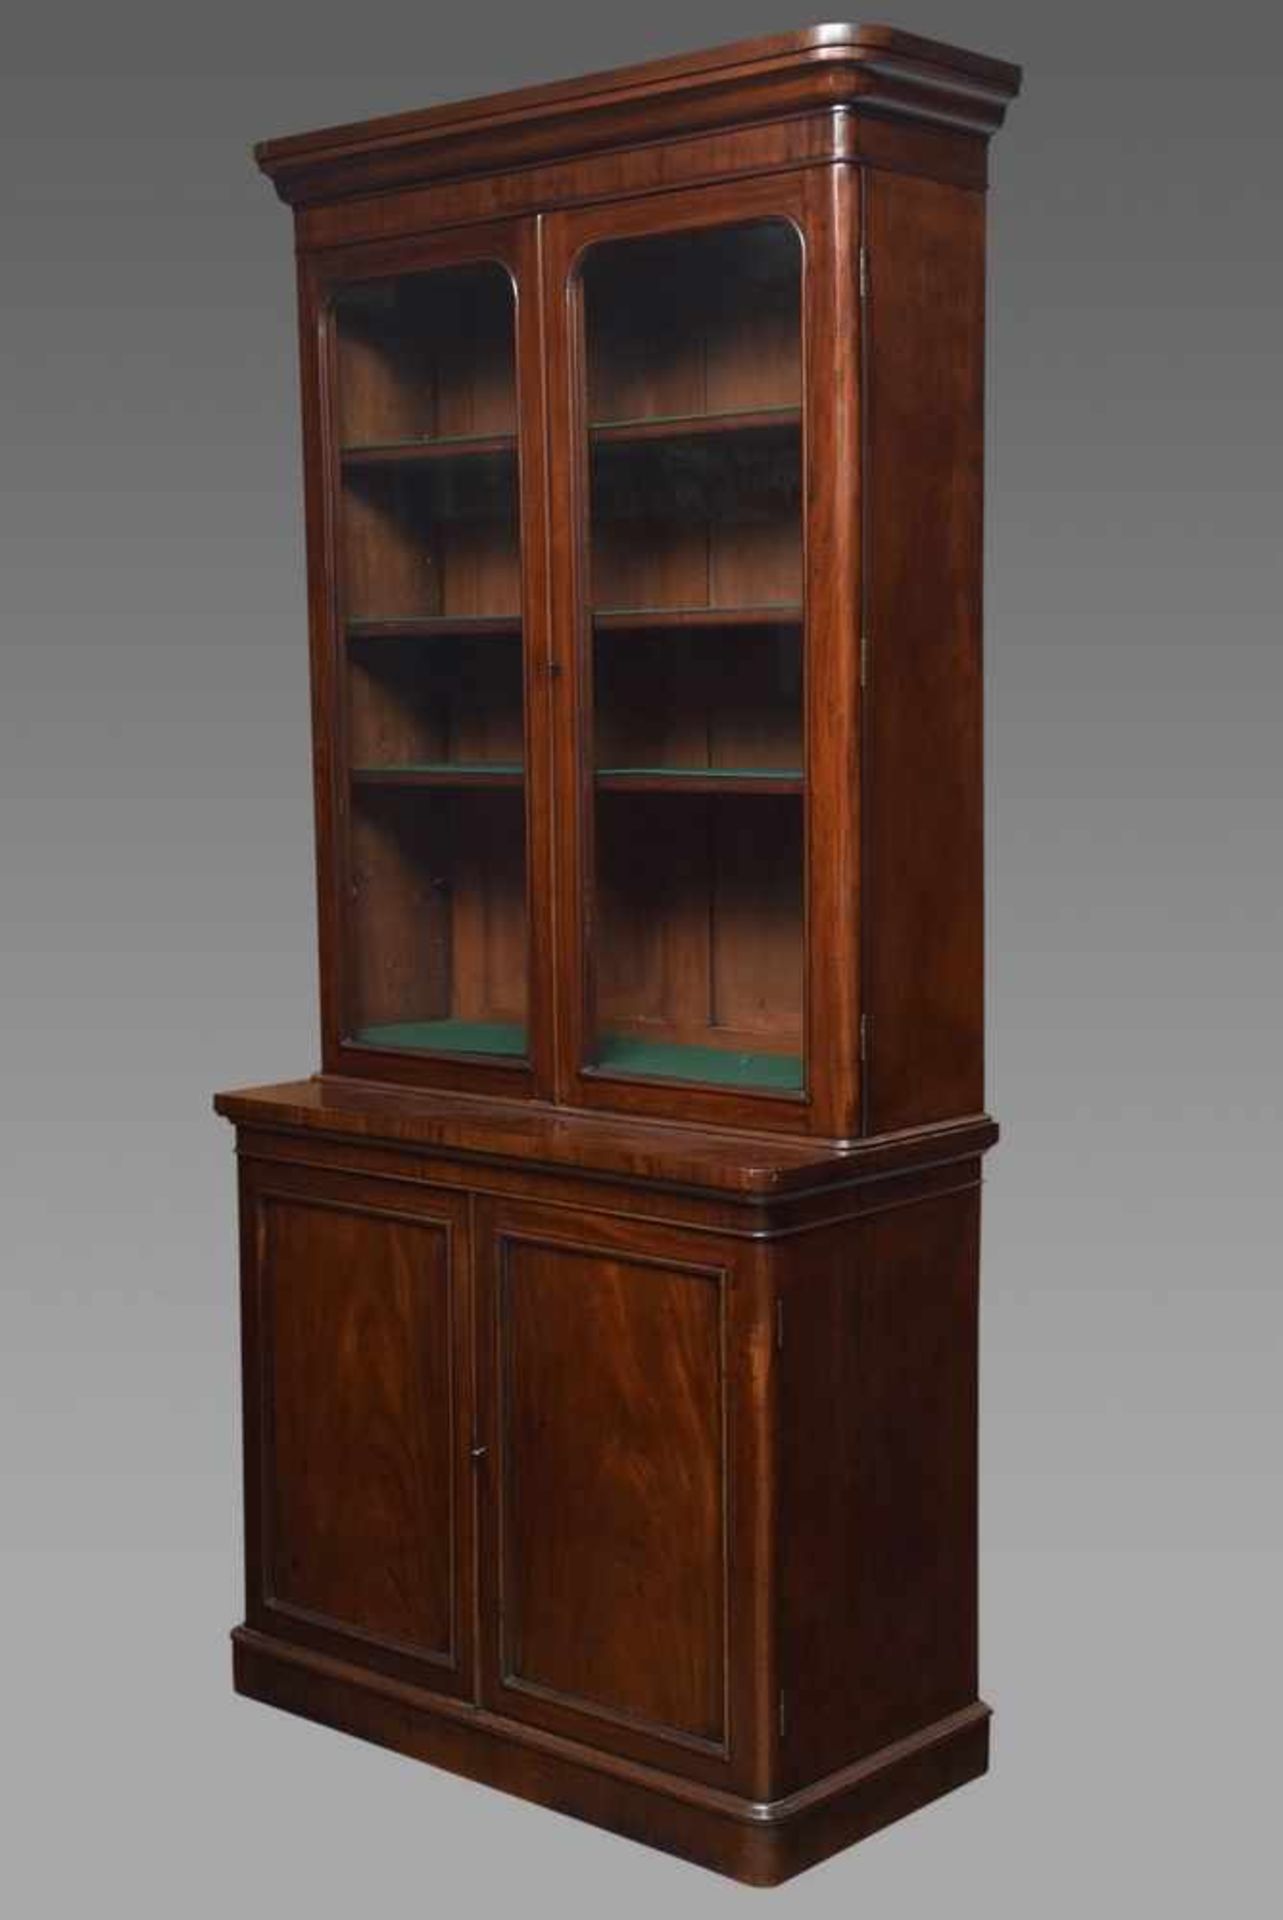 Englisches Bookcase mit Vitrinenaufsatz in schlichter Façon, Mahagoni furniert, um 1870,